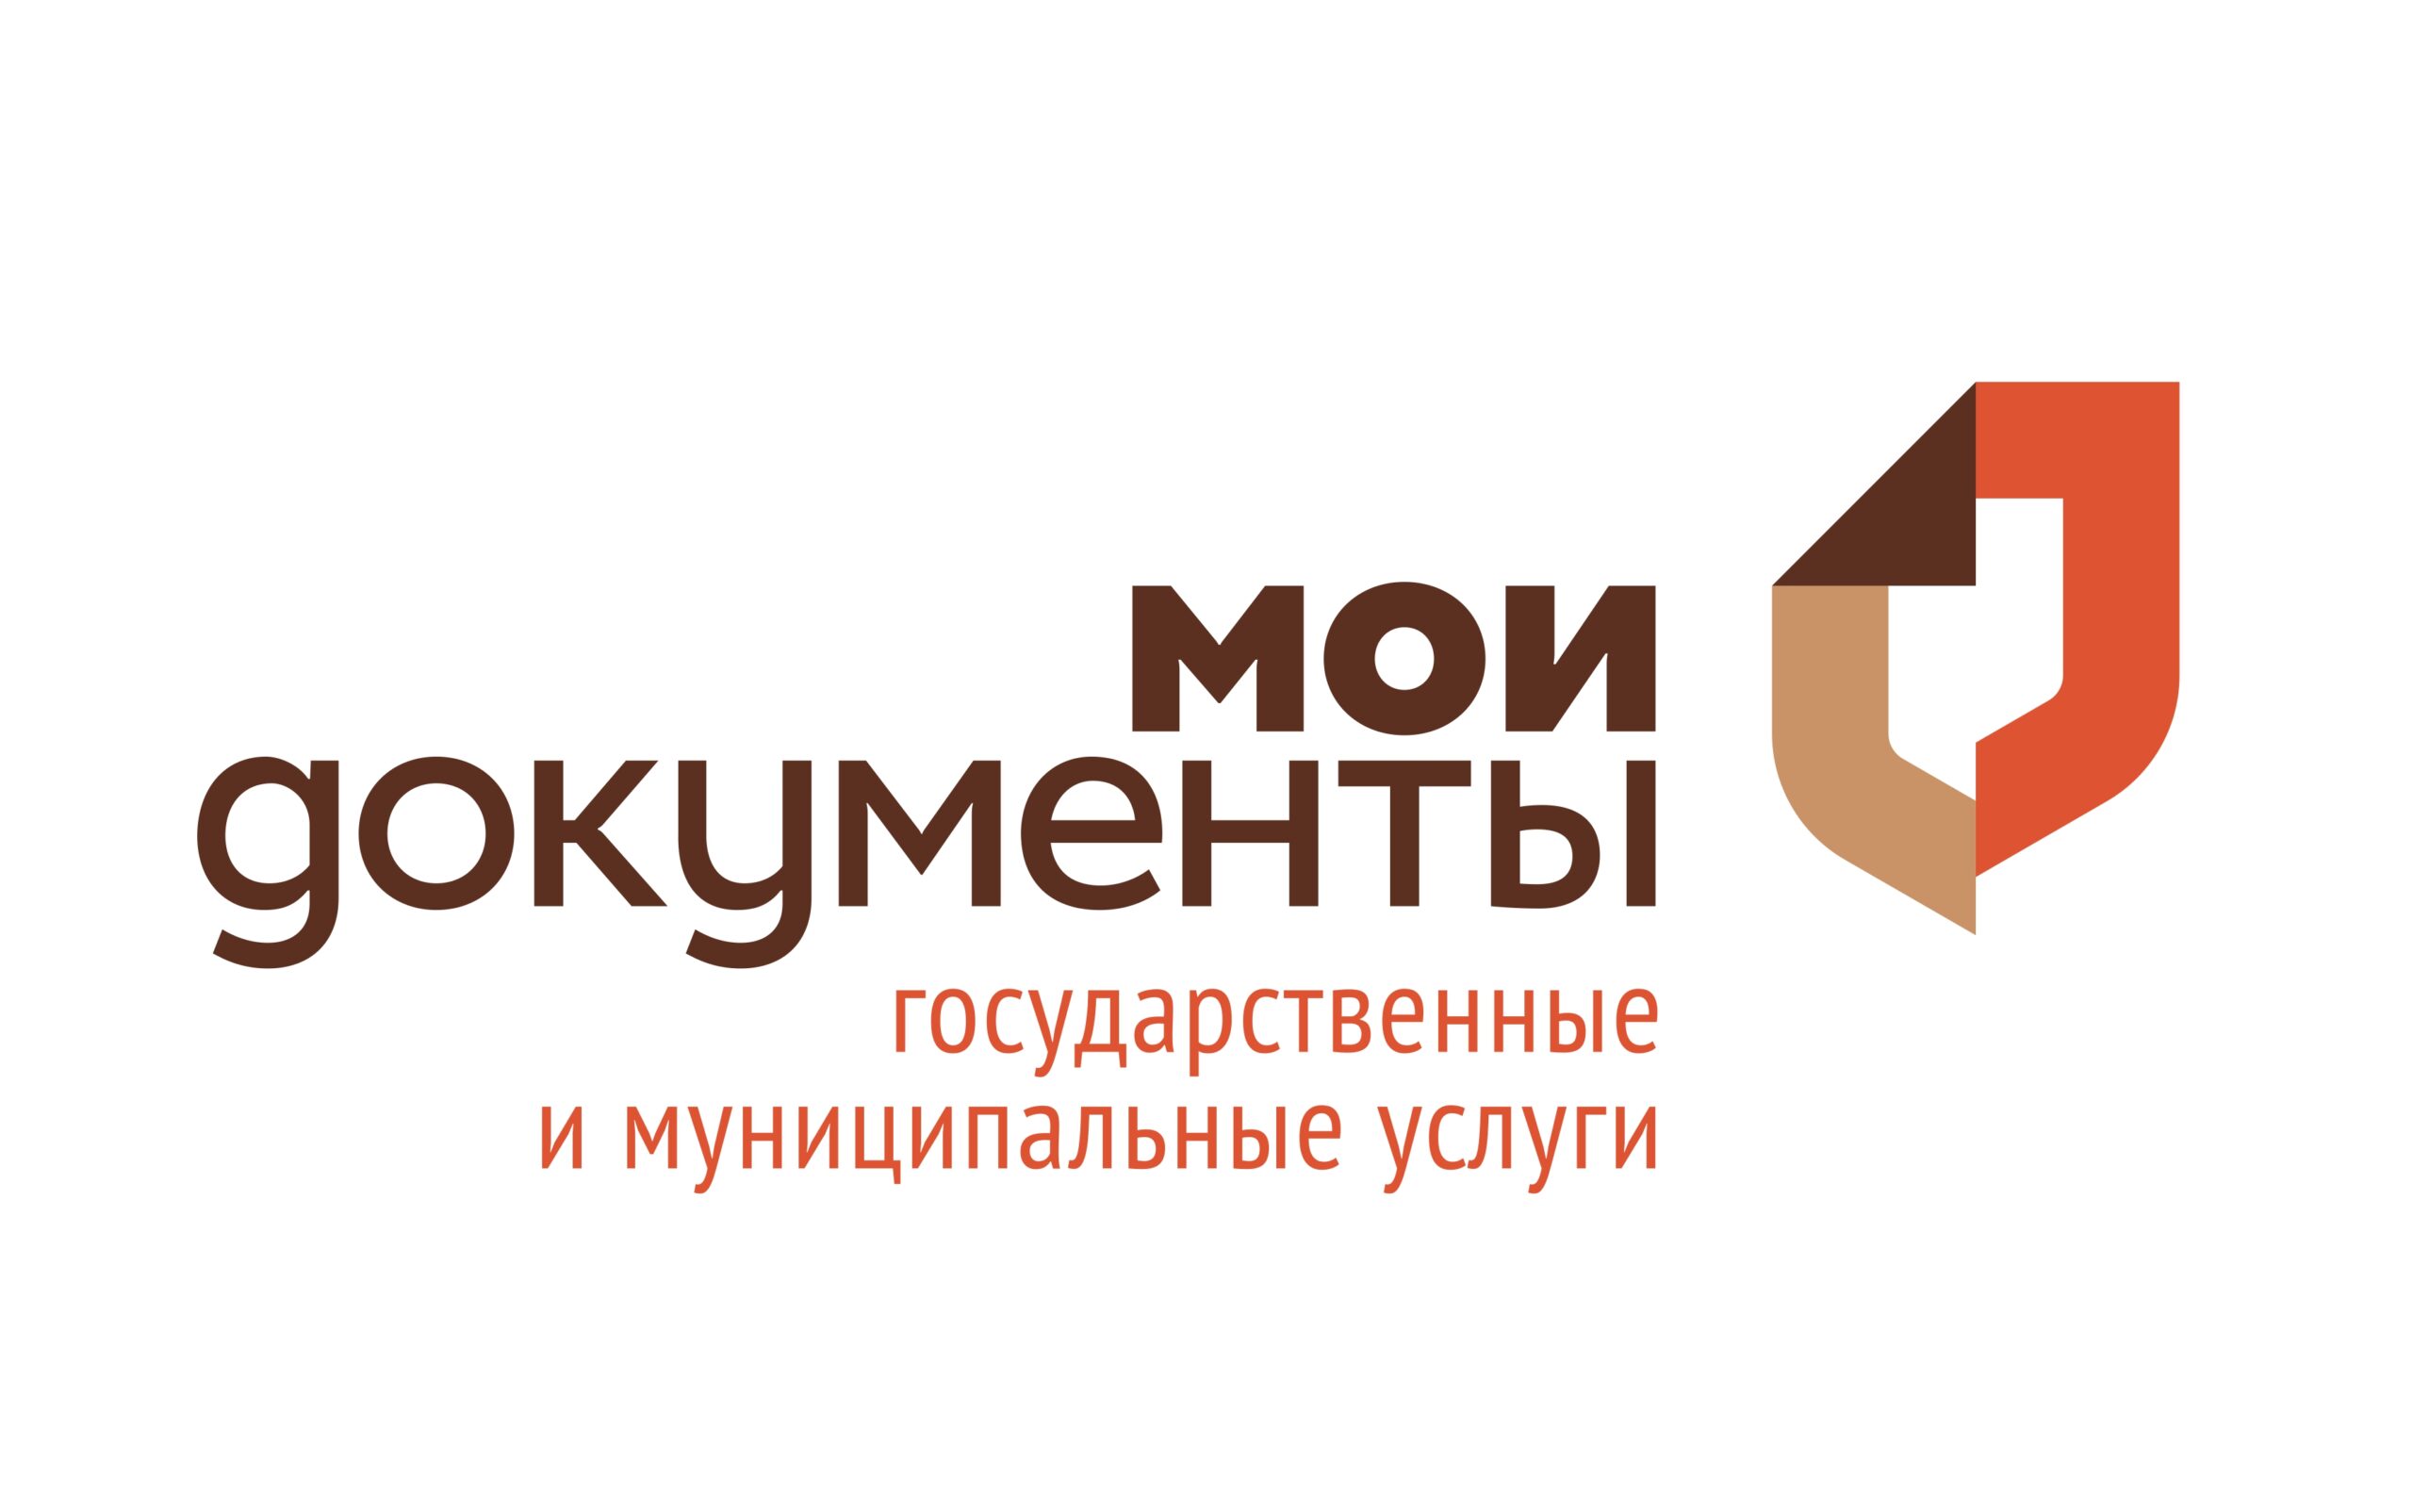 Ульяновцев приглашают записаться на курсы компьютерной грамотности.